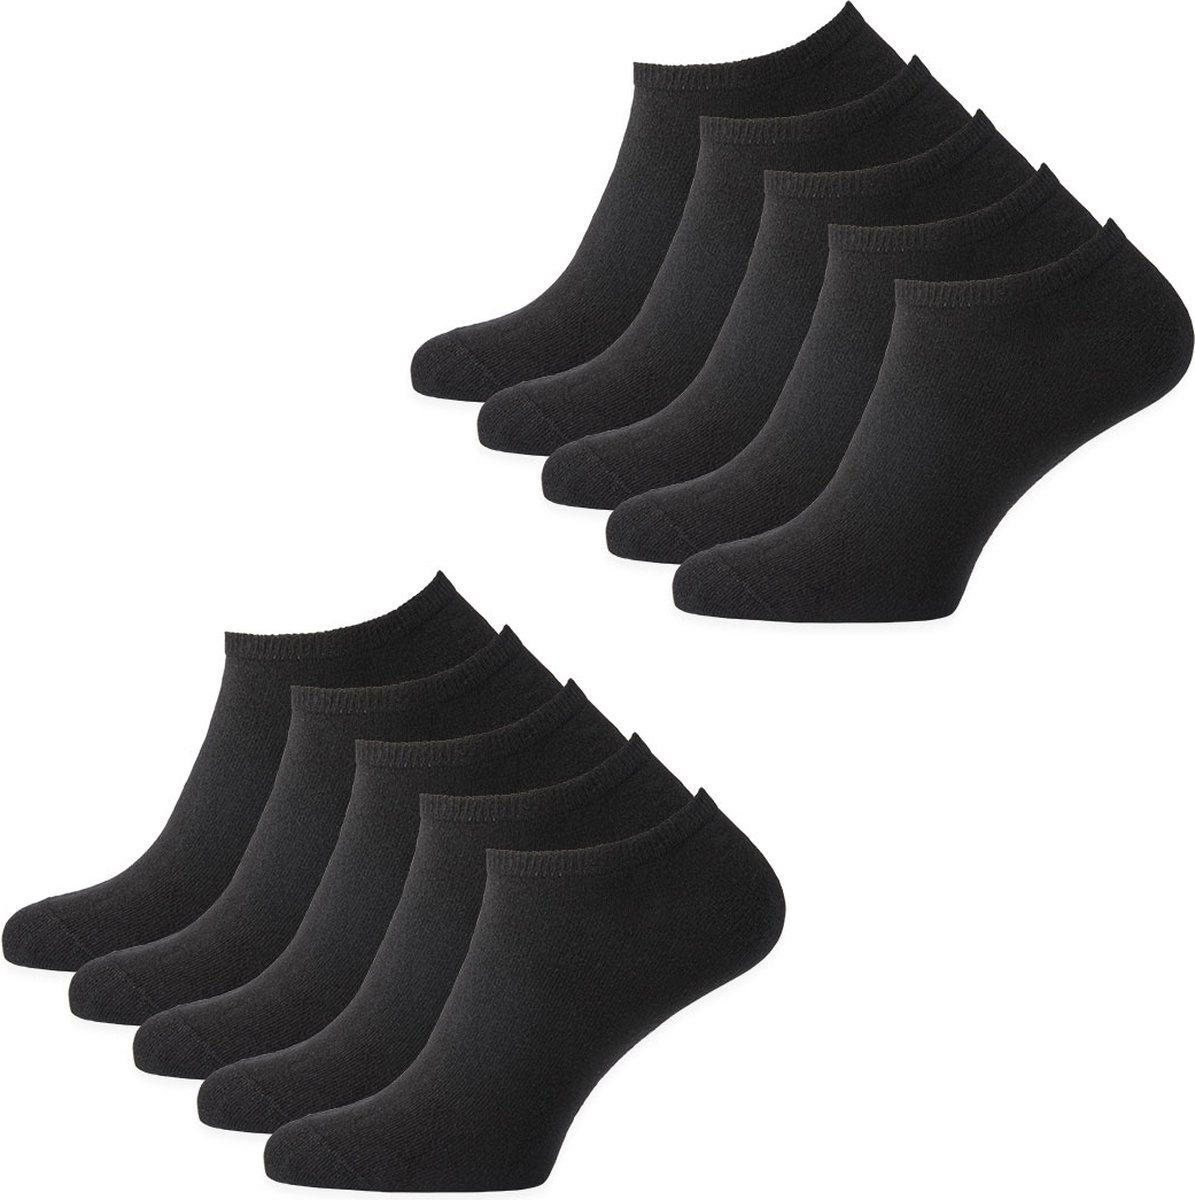 Sokjes.nl ® Enkelsokken - Maat 35/38 - 10 paar - naadloos - katoen - voordeelverpakking - zwart